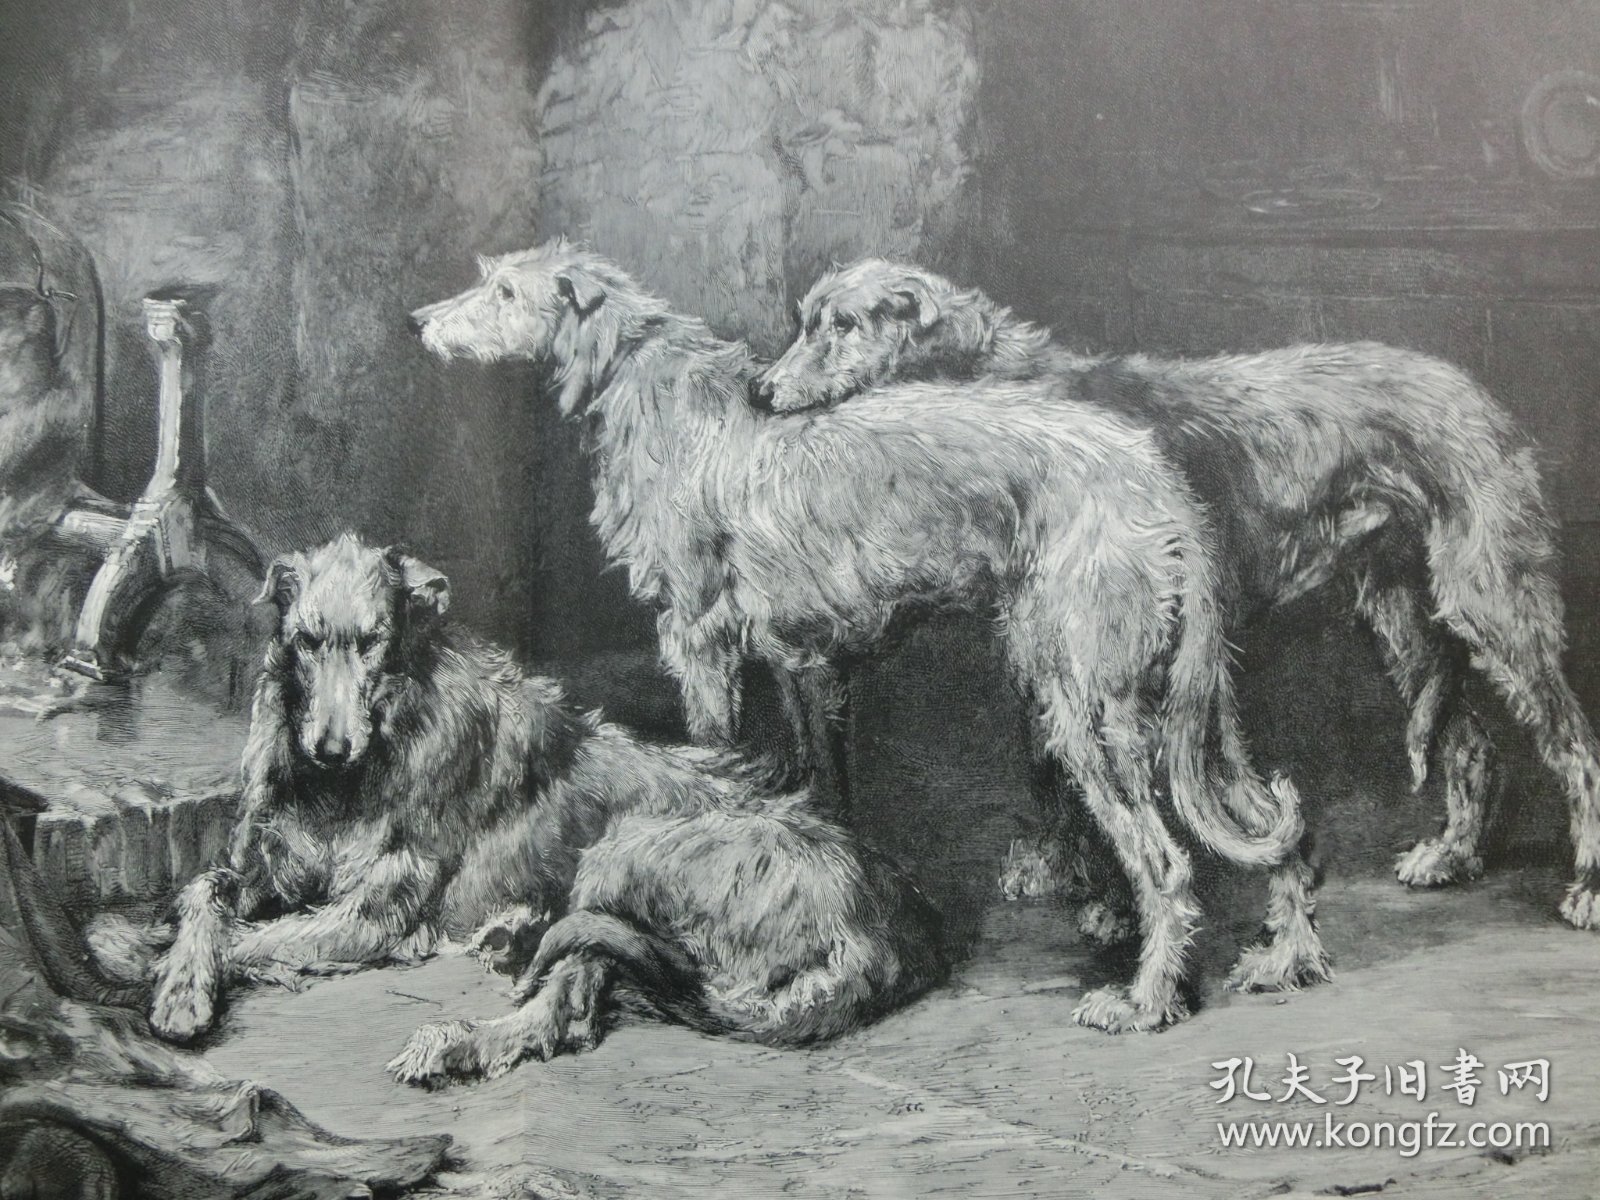 【百元包邮】《忙碌了一天之后的猎犬》（nach einem anstrengenden tage）1902年，大幅木刻版画，纸张尺寸约56×41厘米。出自英国动物和运动画家,菲利普·尤斯塔斯·斯特雷顿 (Philip Eustace Stretton,1865-1919)油画作品